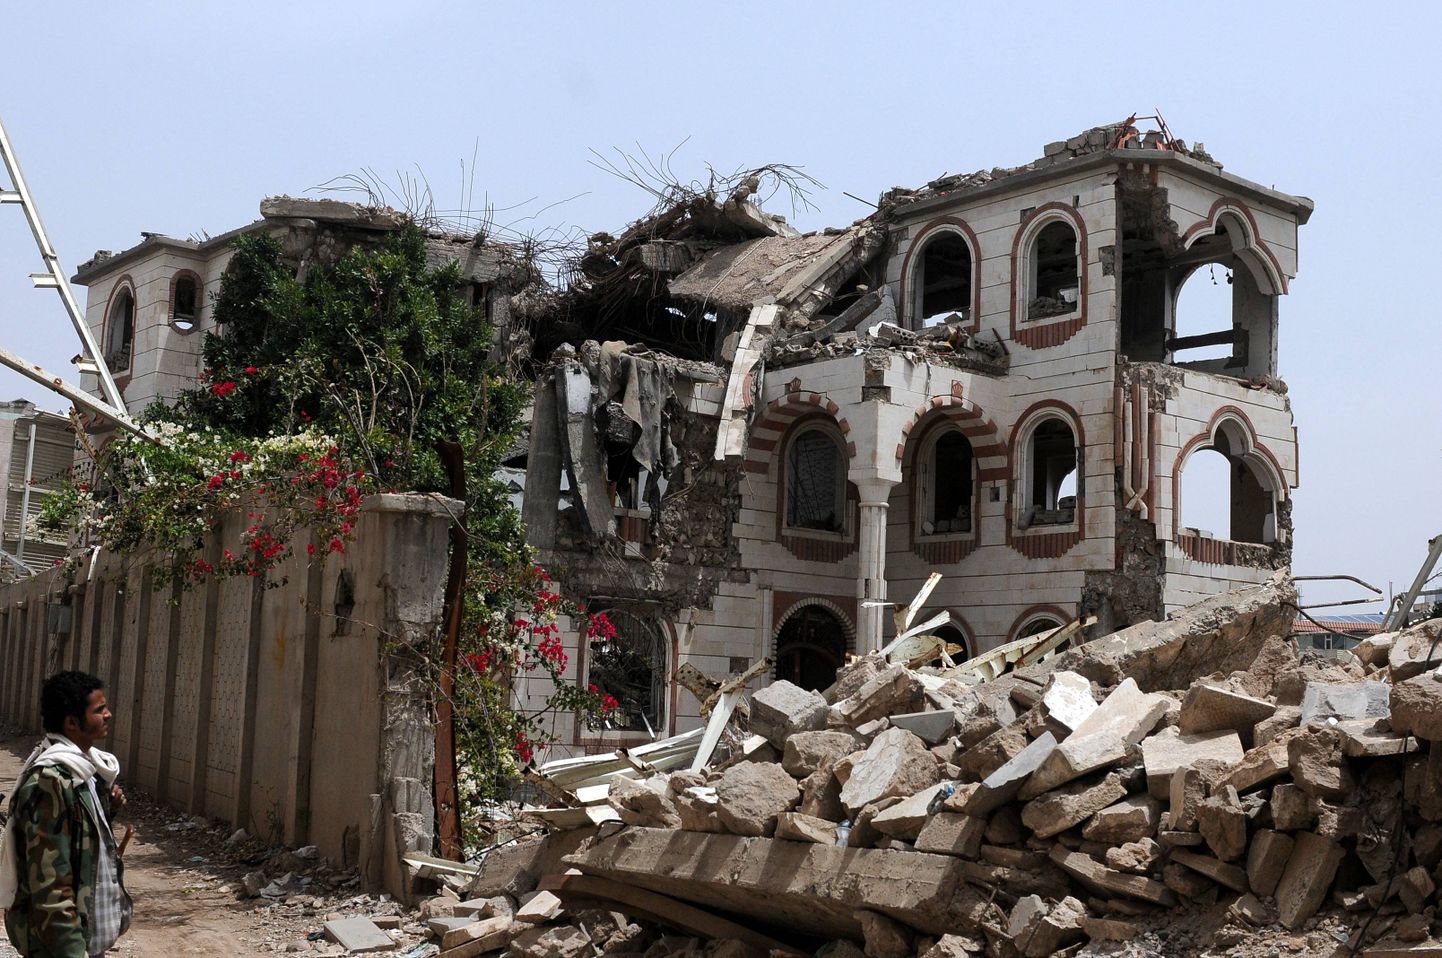 Saudi õhurünnkautes hävinud maja.